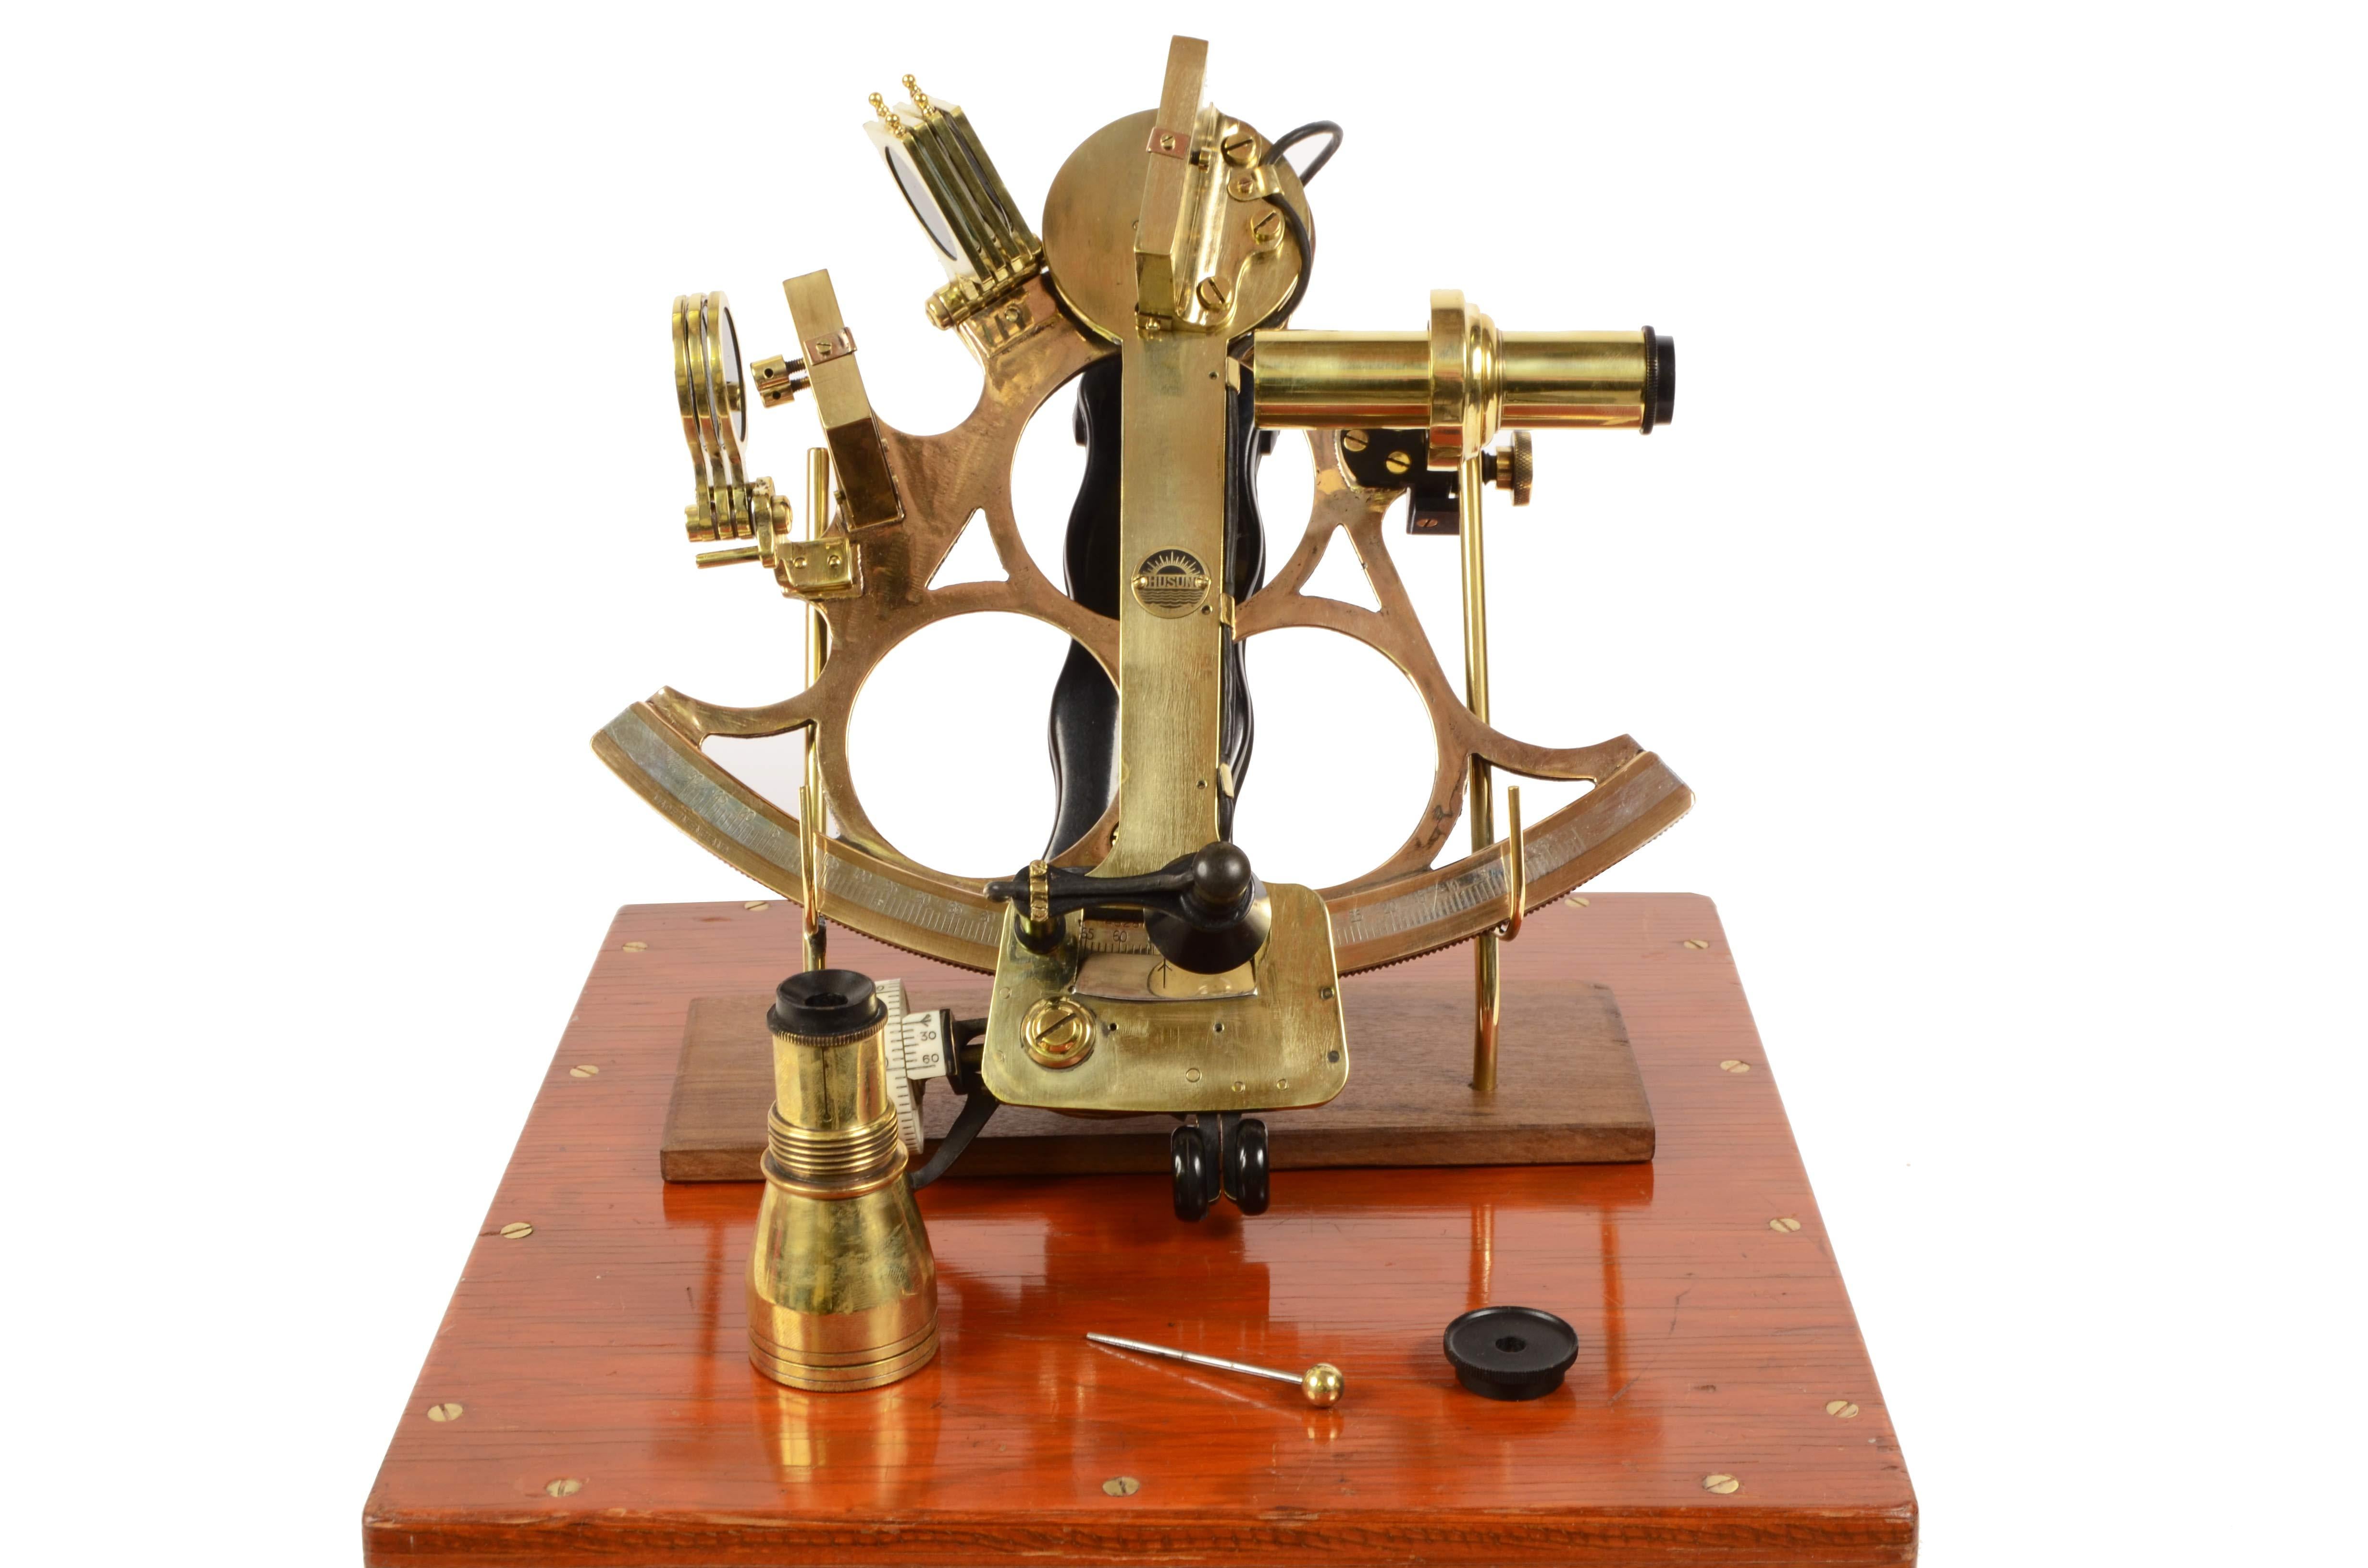 sextant en laiton des années 1930 signé de la marque Husun et fabriqué par H. Hughes & Son Ltd, une société active depuis environ 250 ans et spécialisée dans la production d'instruments nautiques ; instrument complet avec optique et placé dans une